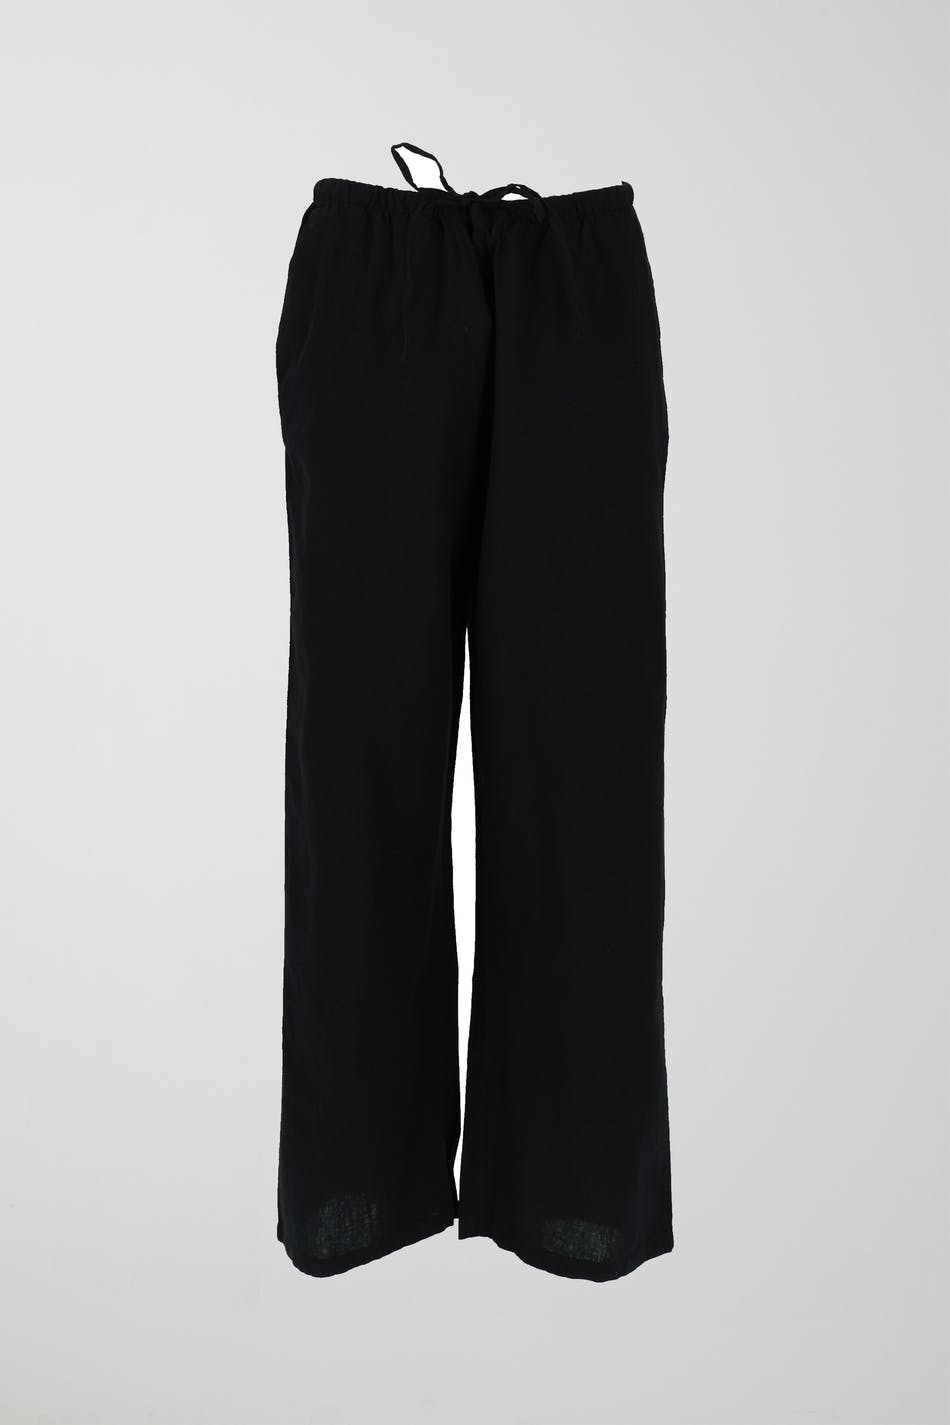 Gina Tricot - Petite linen blend trousers - linnebyxor - Black - S - Female